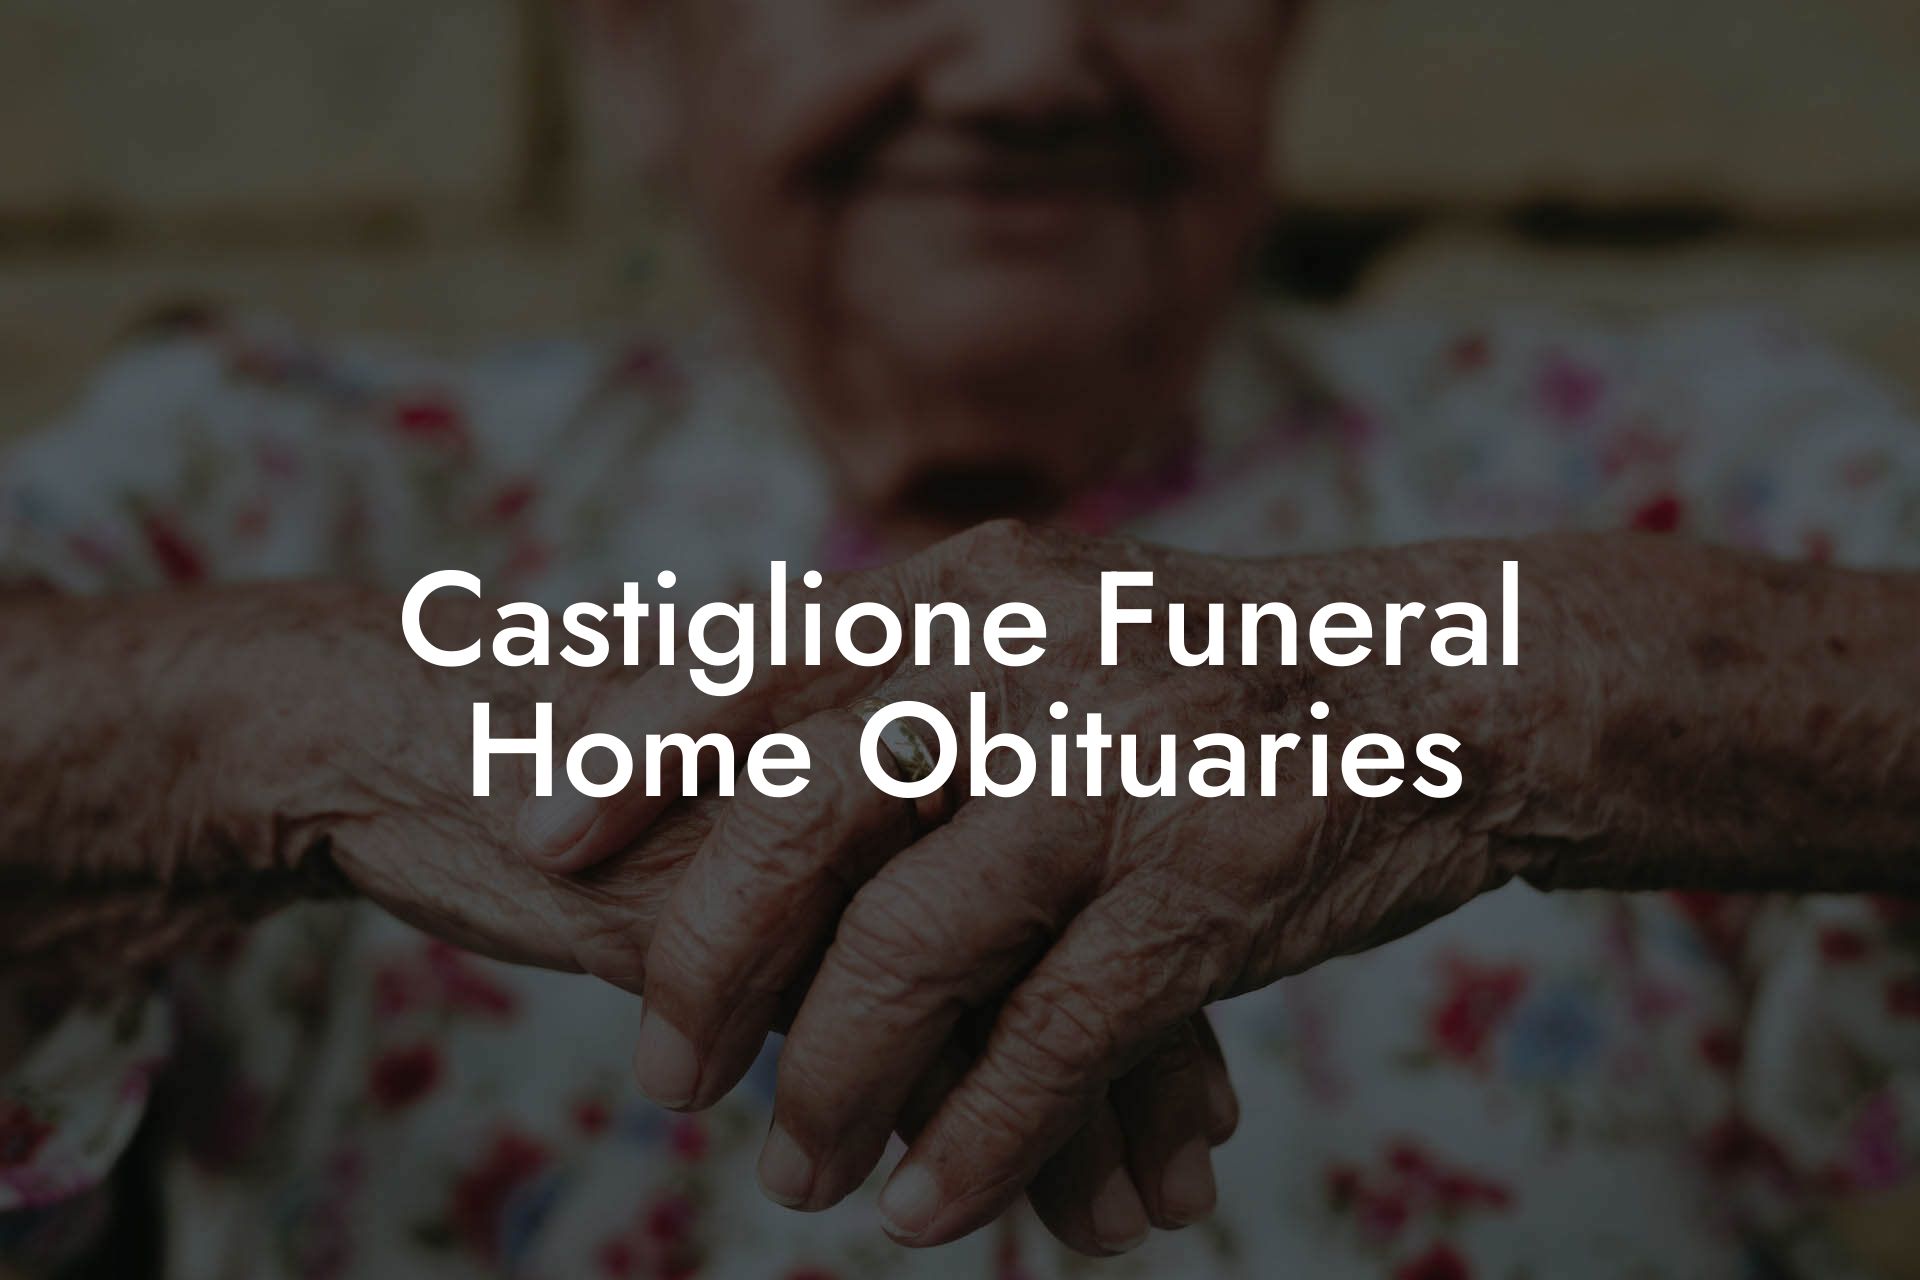 Castiglione Funeral Home Obituaries